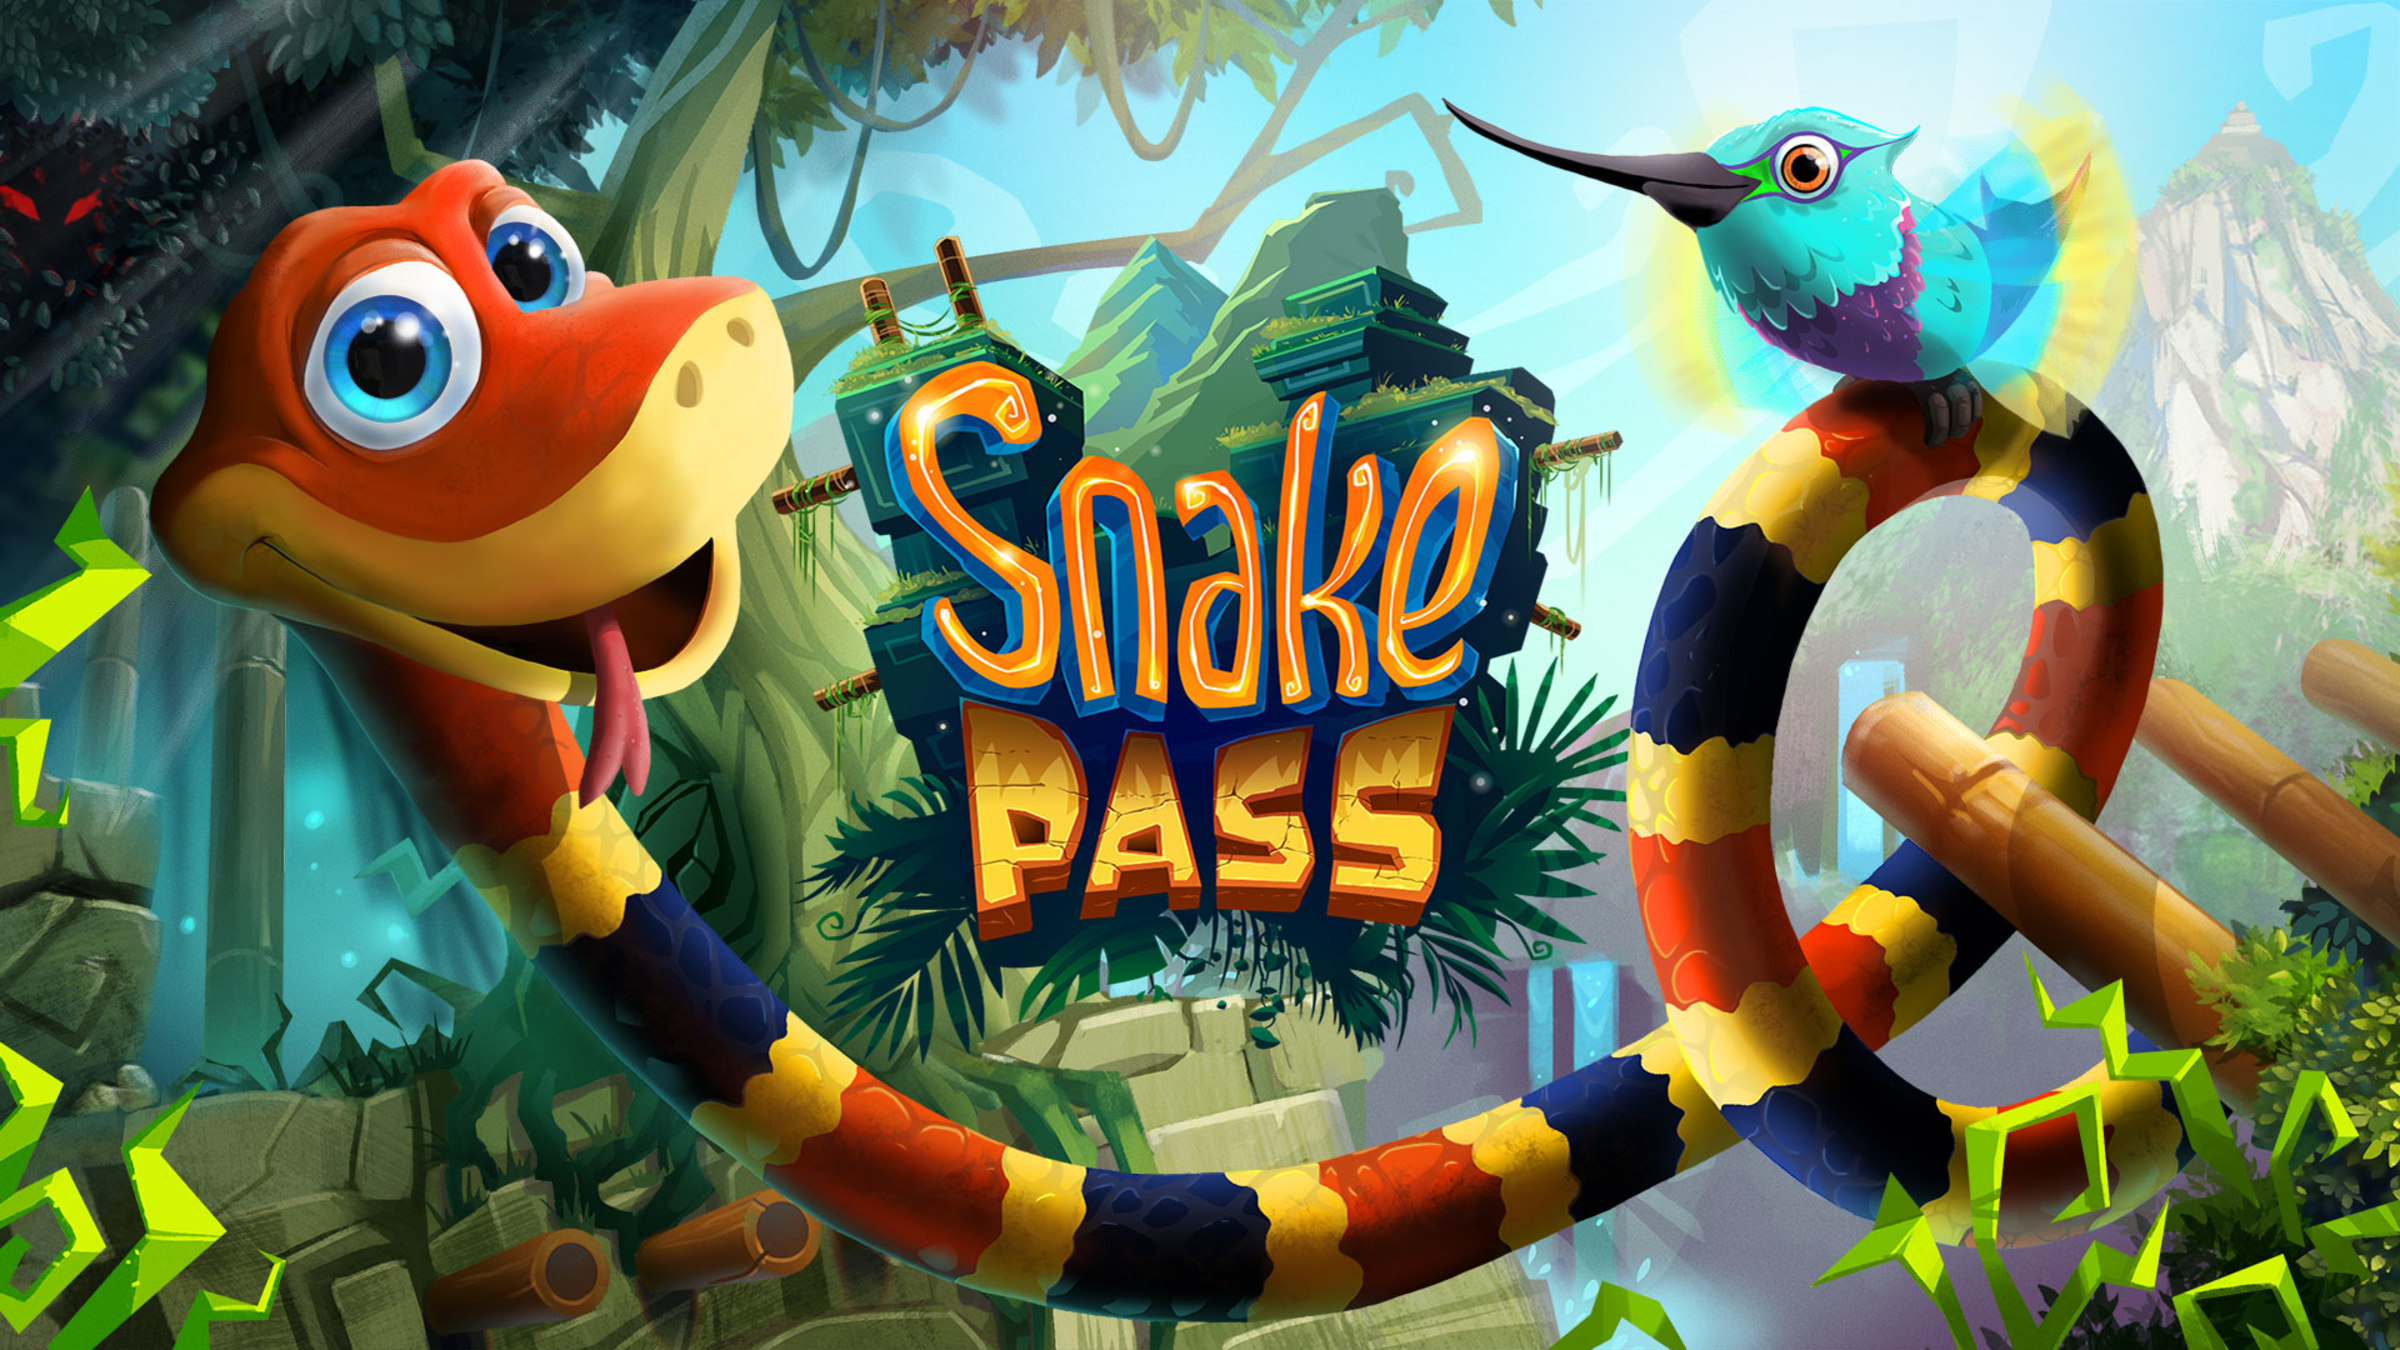 Jogo Snake Pass para Nintendo Switch - Dicas, análise e imagens